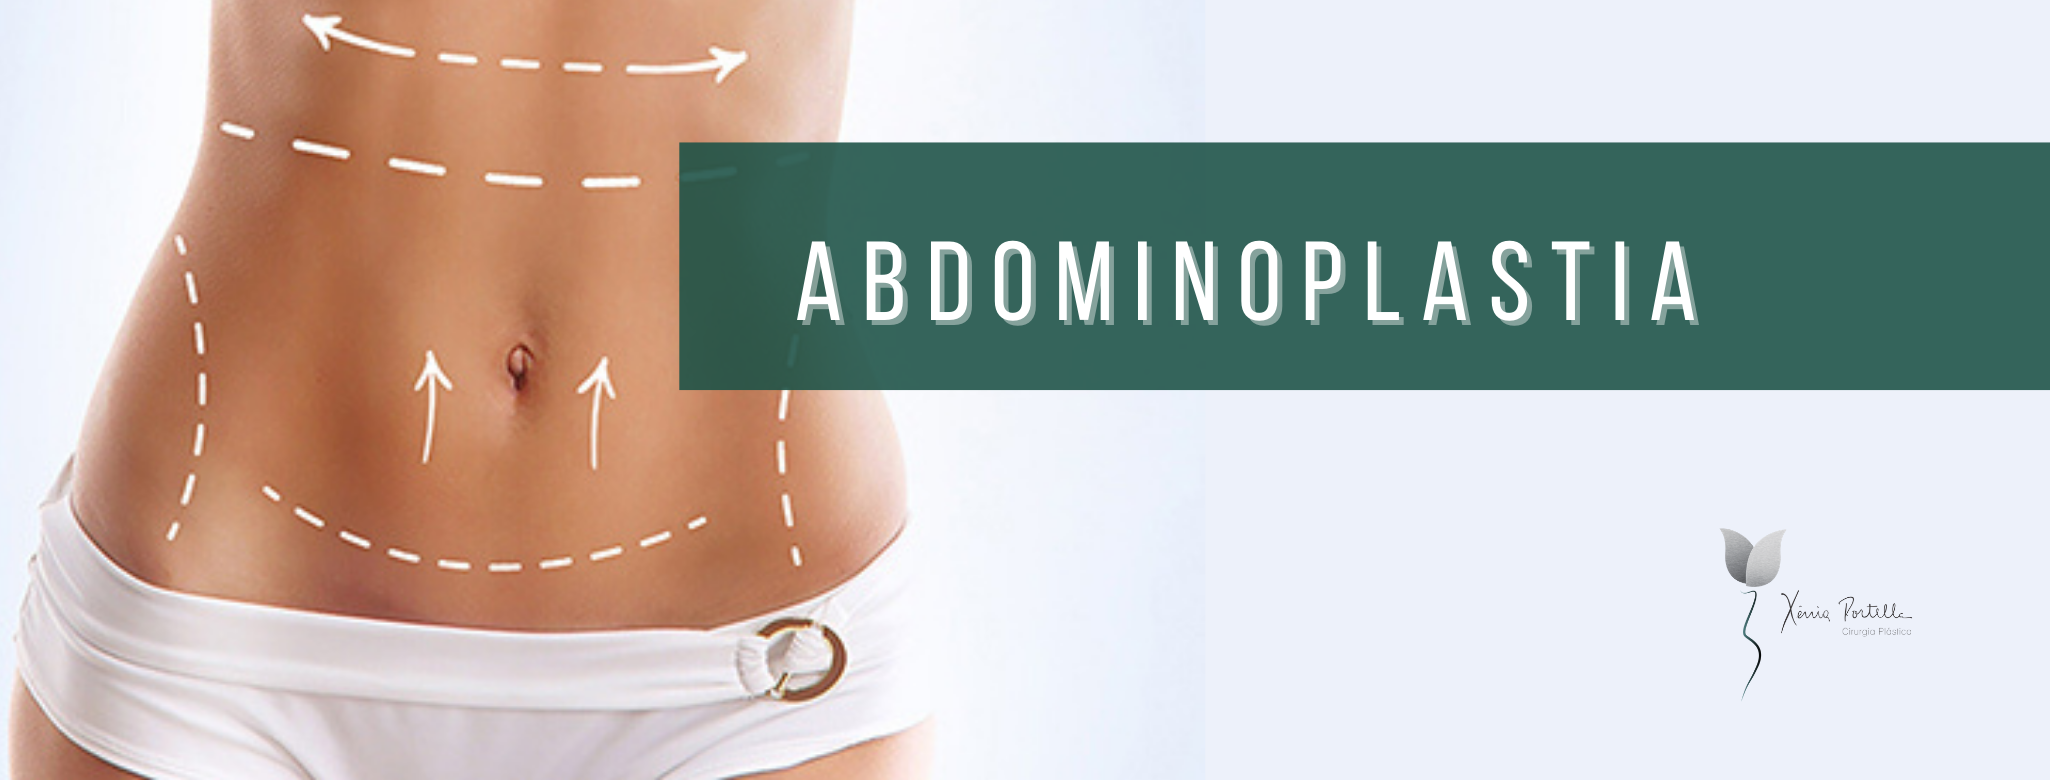 Abdominoplastia: Estética, autoestima e saúde